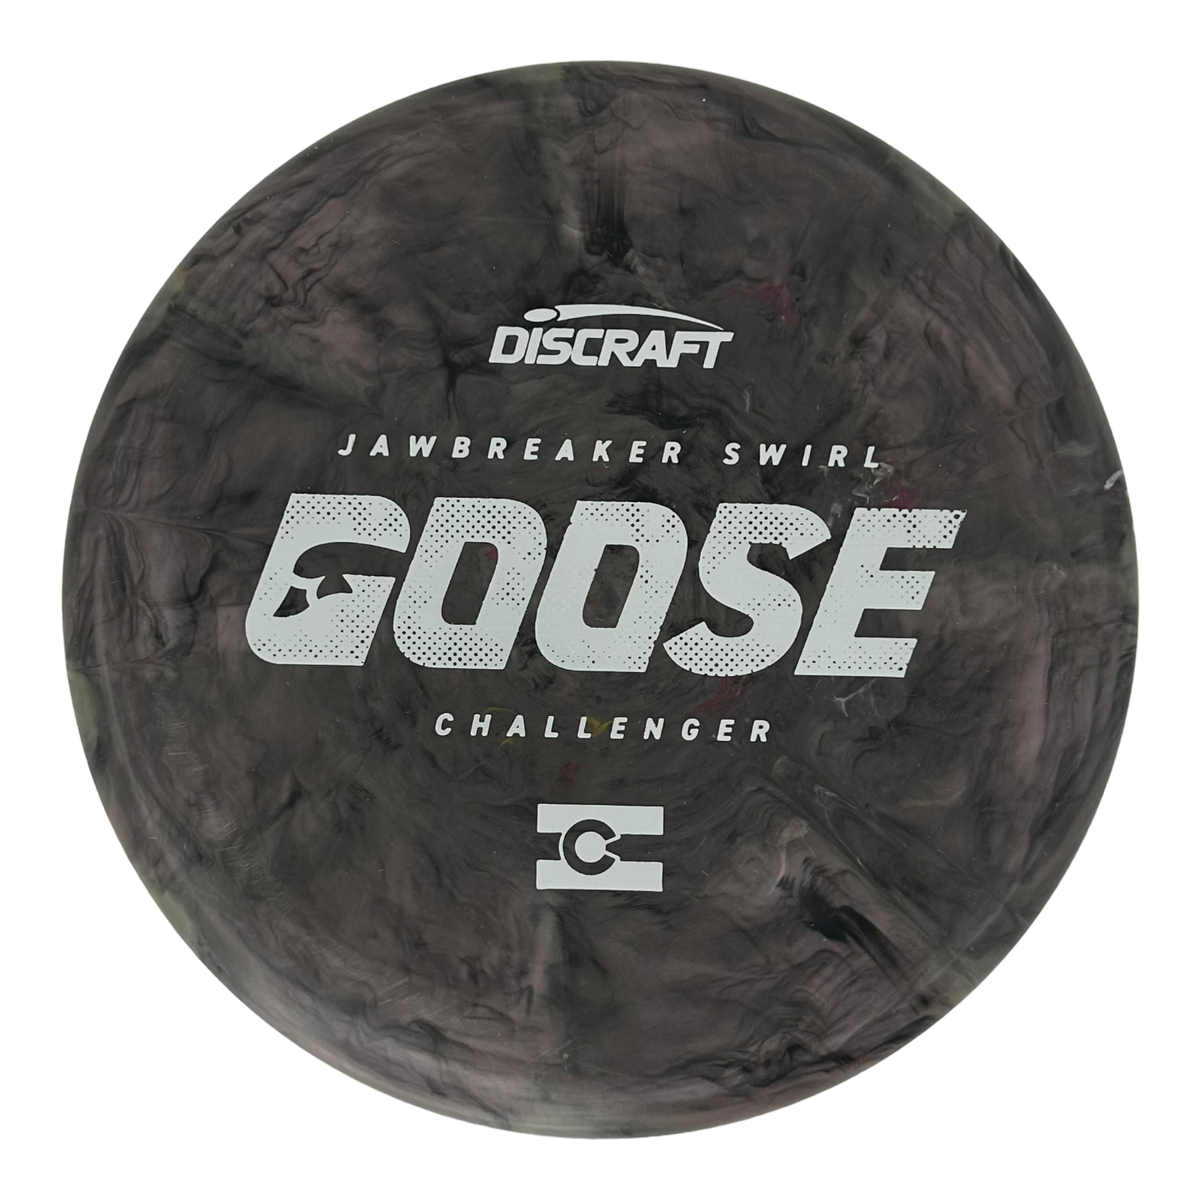 Discraft Aaron Gossage Jawbreaker Swirl Challenger